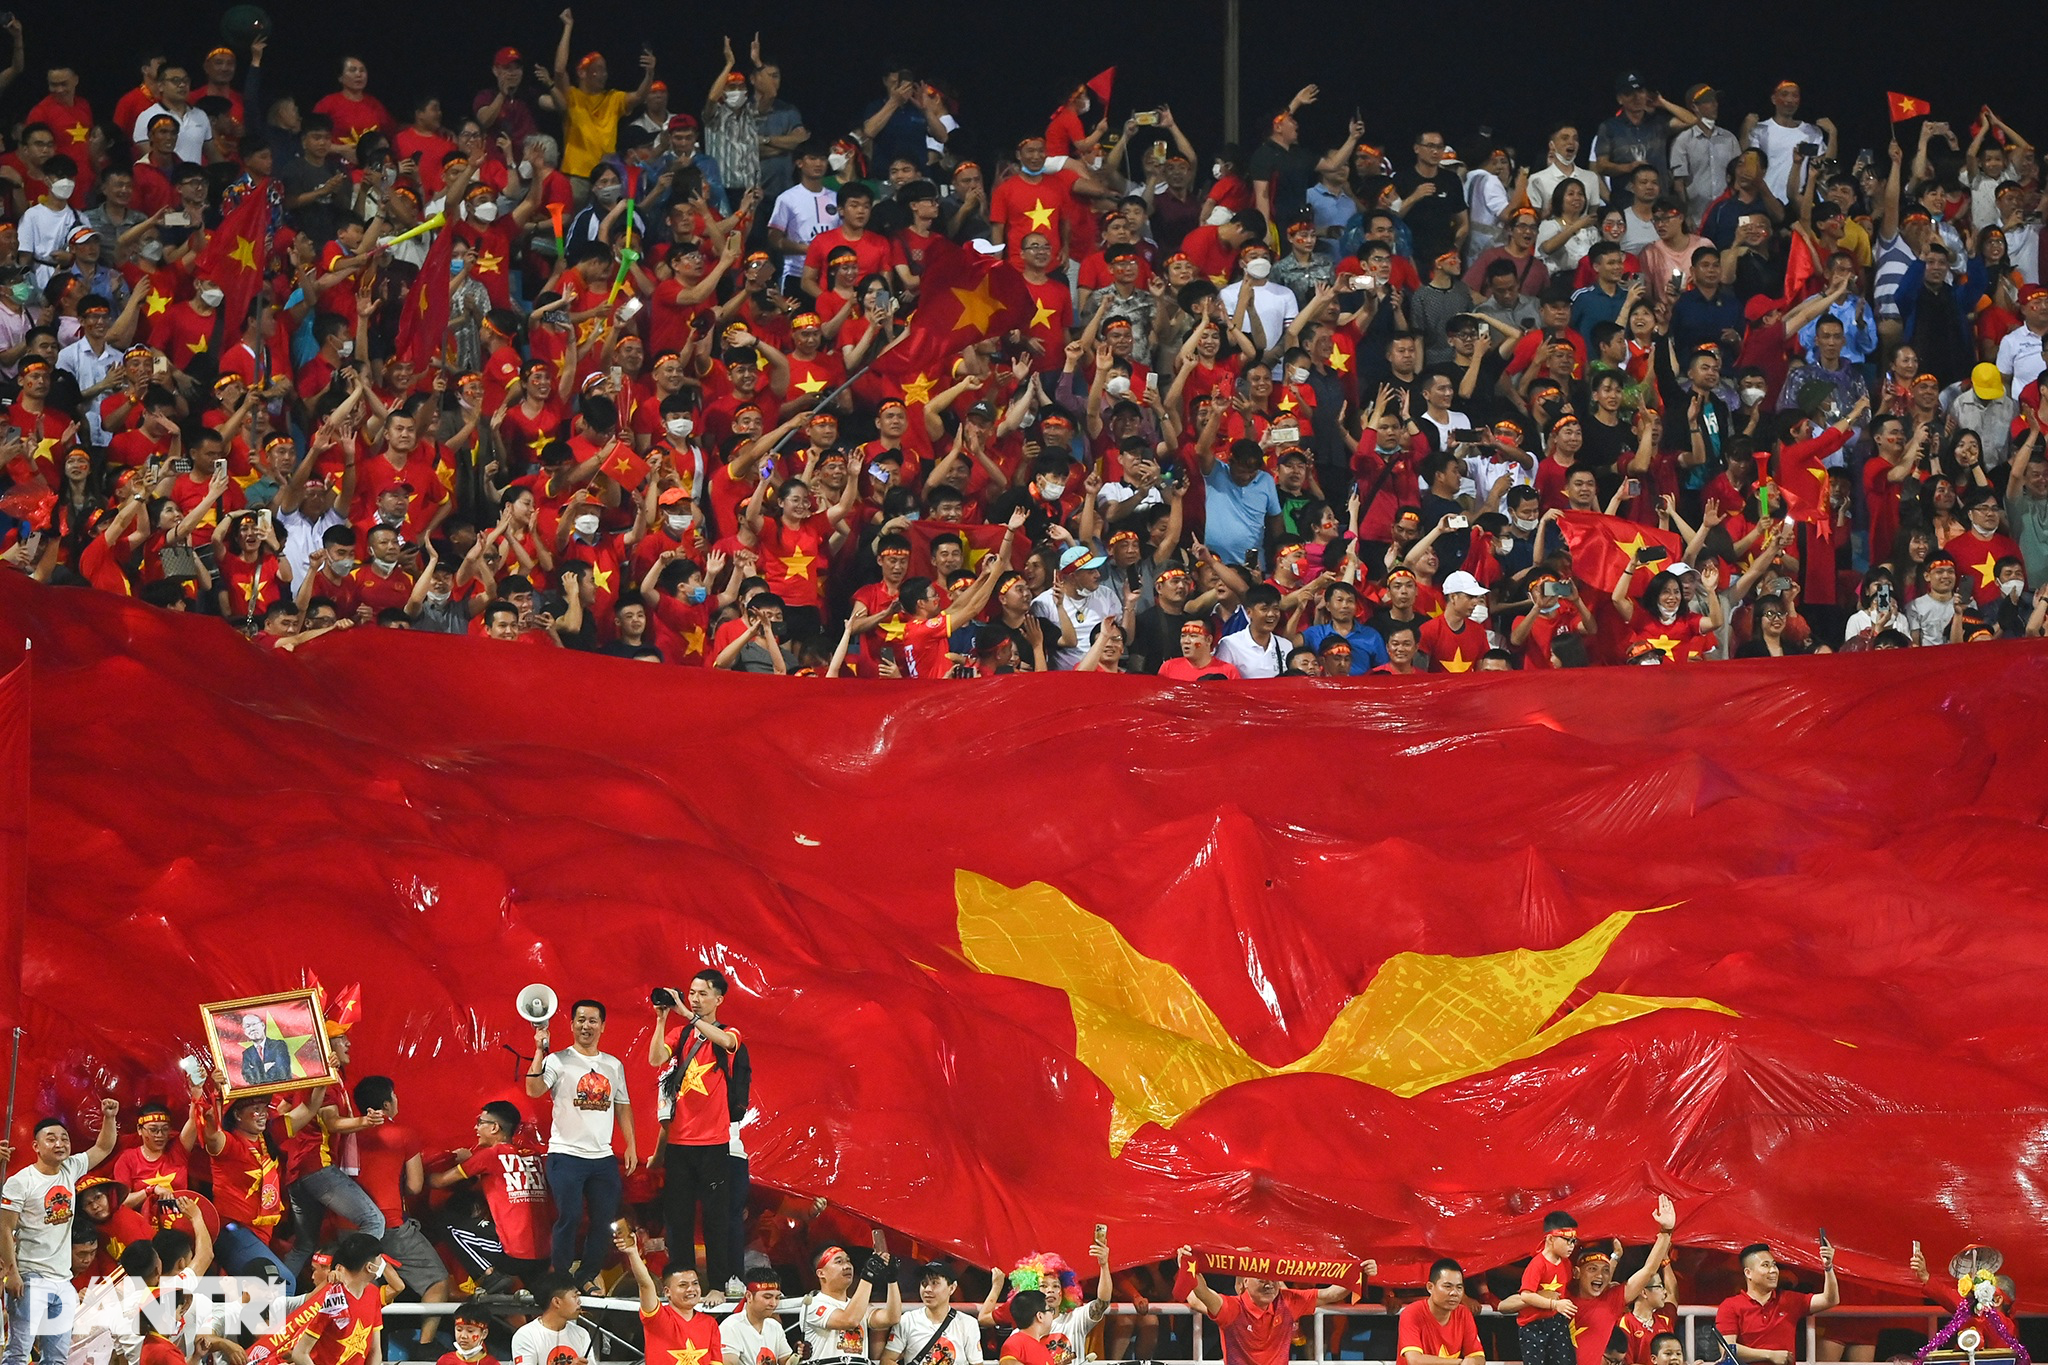 Thể thao U23 Việt Nam là niềm tự hào của toàn dân tộc, cùng những khoảnh khắc điên cuồng trên sân cỏ việt đầy sức sống. Hãy cùng đón xem và cổ vũ cho U23 Việt Nam với niềm tự hào và sự đoàn kết của chúng ta.